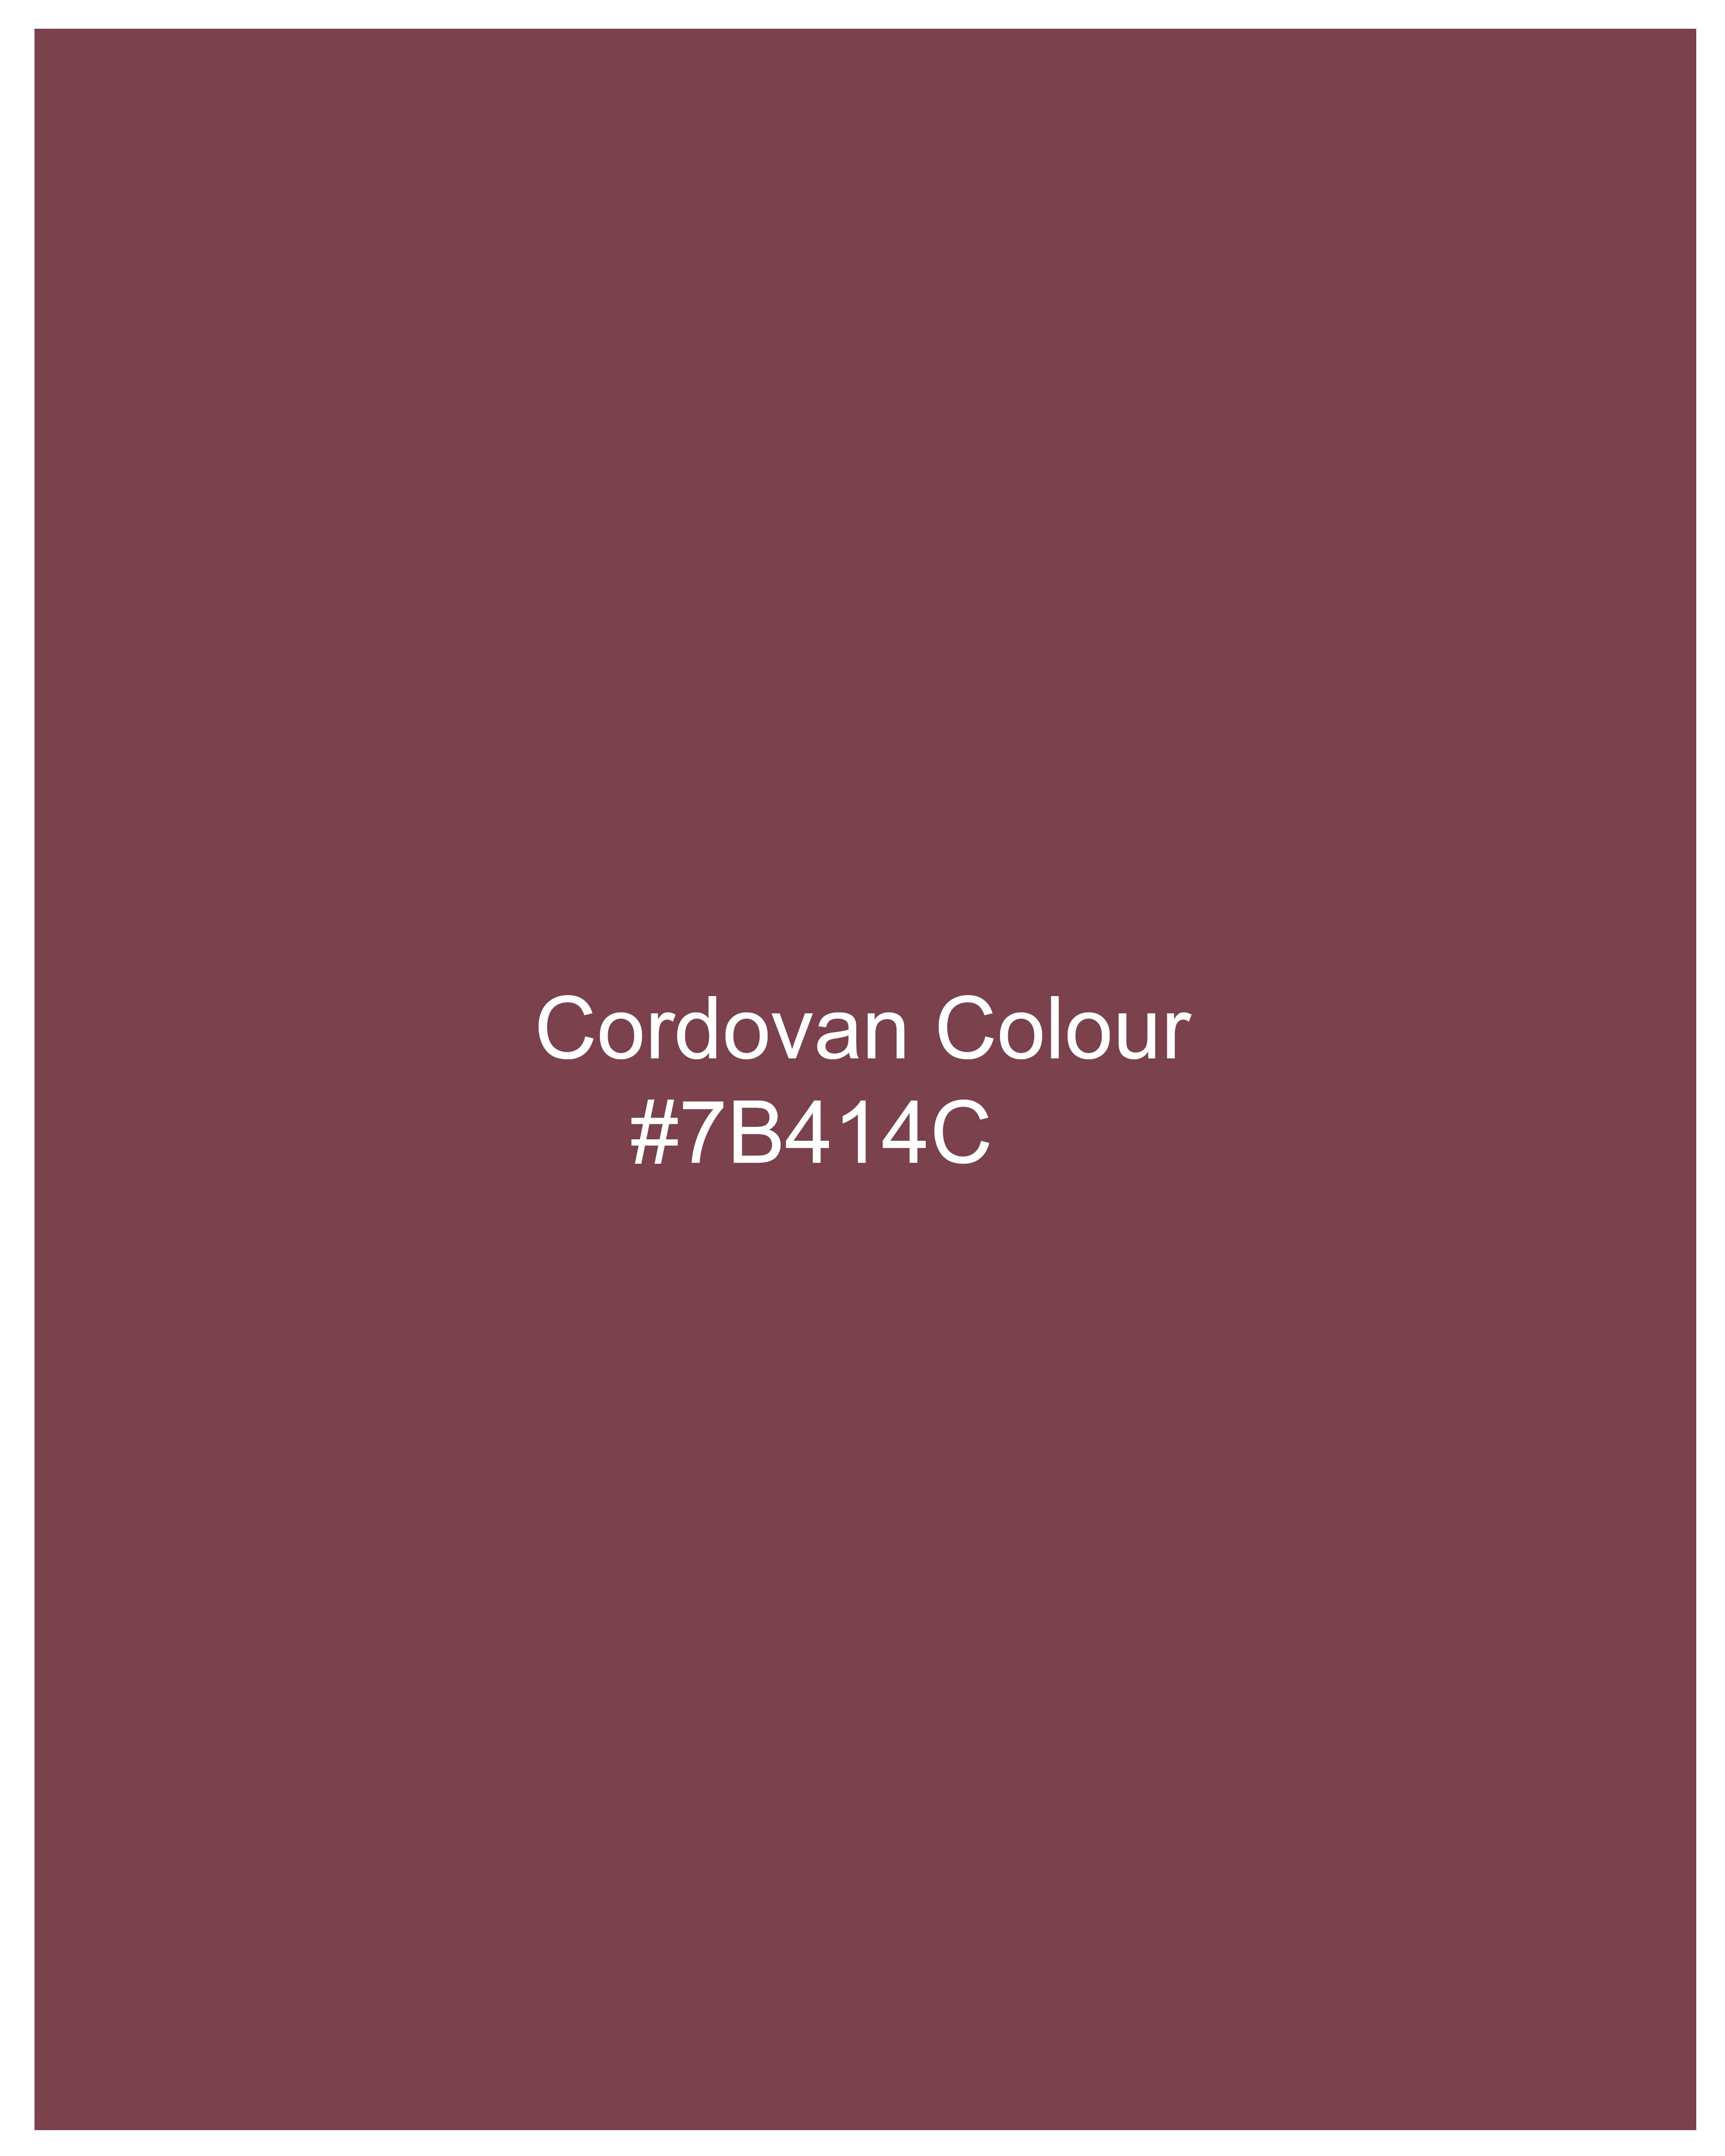 Cordovan Maroon Premium Cotton Shirt WS051-MN-32, WS051-MN-34, WS051-MN-36, WS051-MN-38, WS051-MN-40, WS051-MN-42